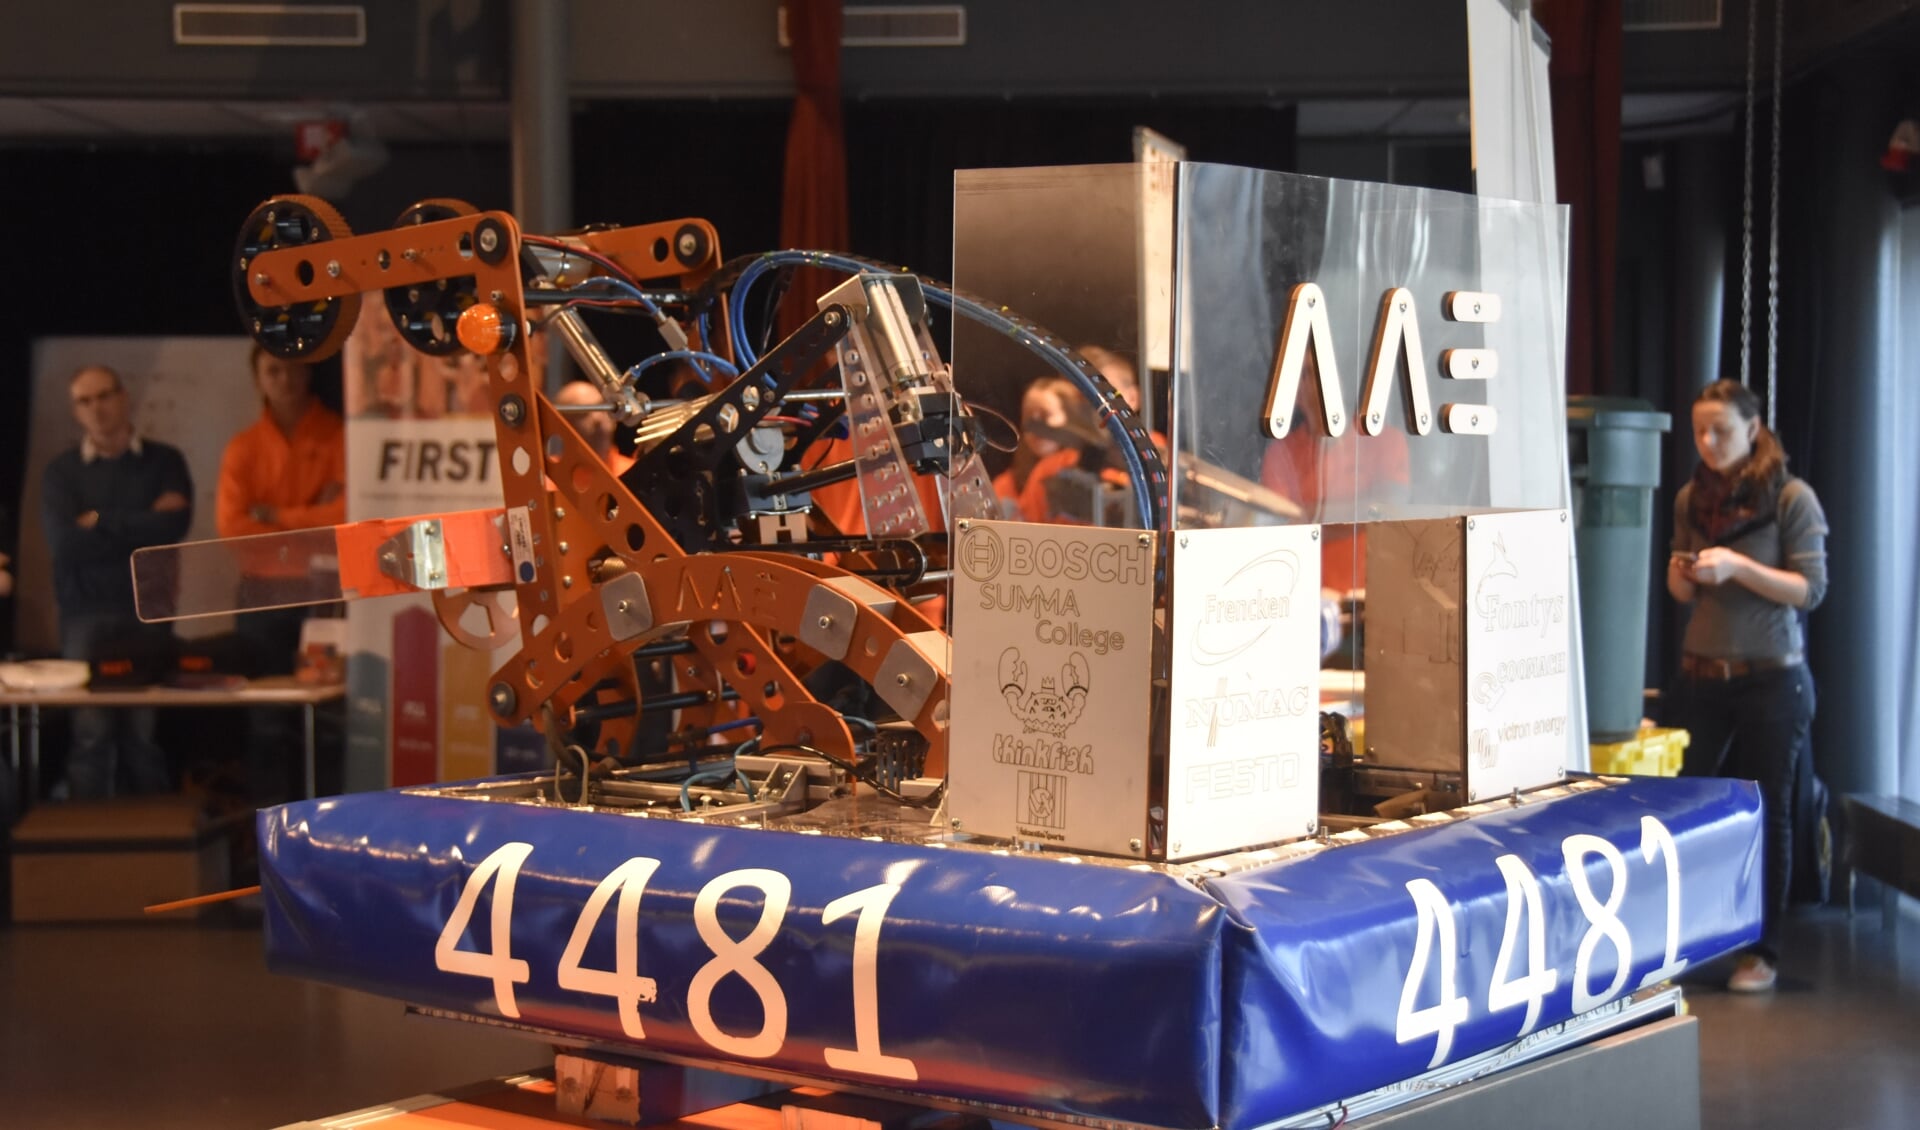 De robot van Team Rembrandts uit de competitie van 2016